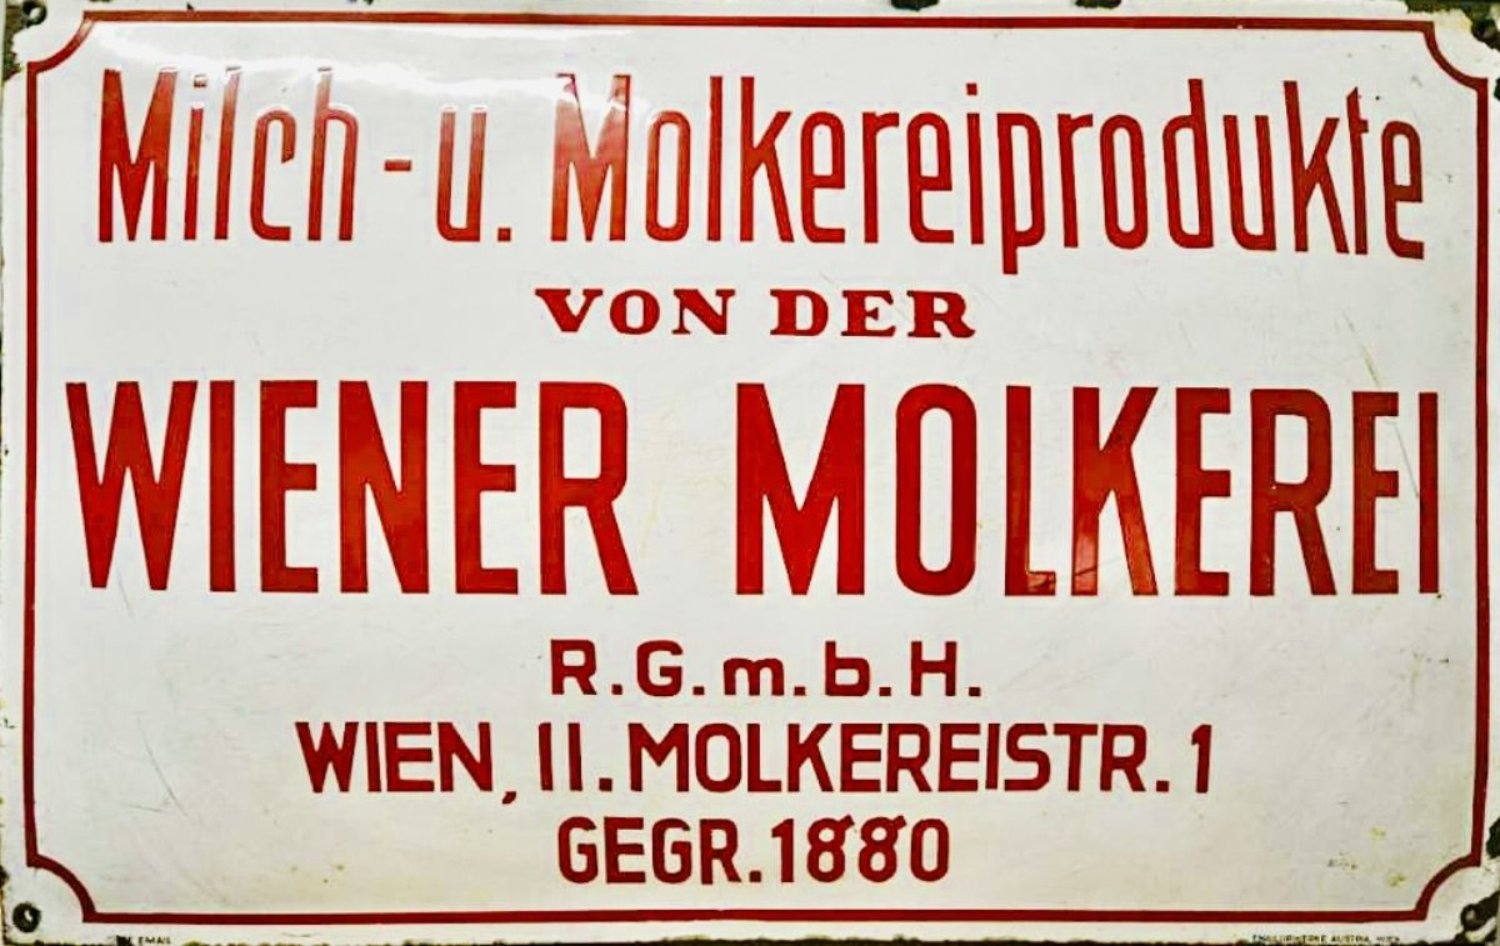 Wiener Molkerei